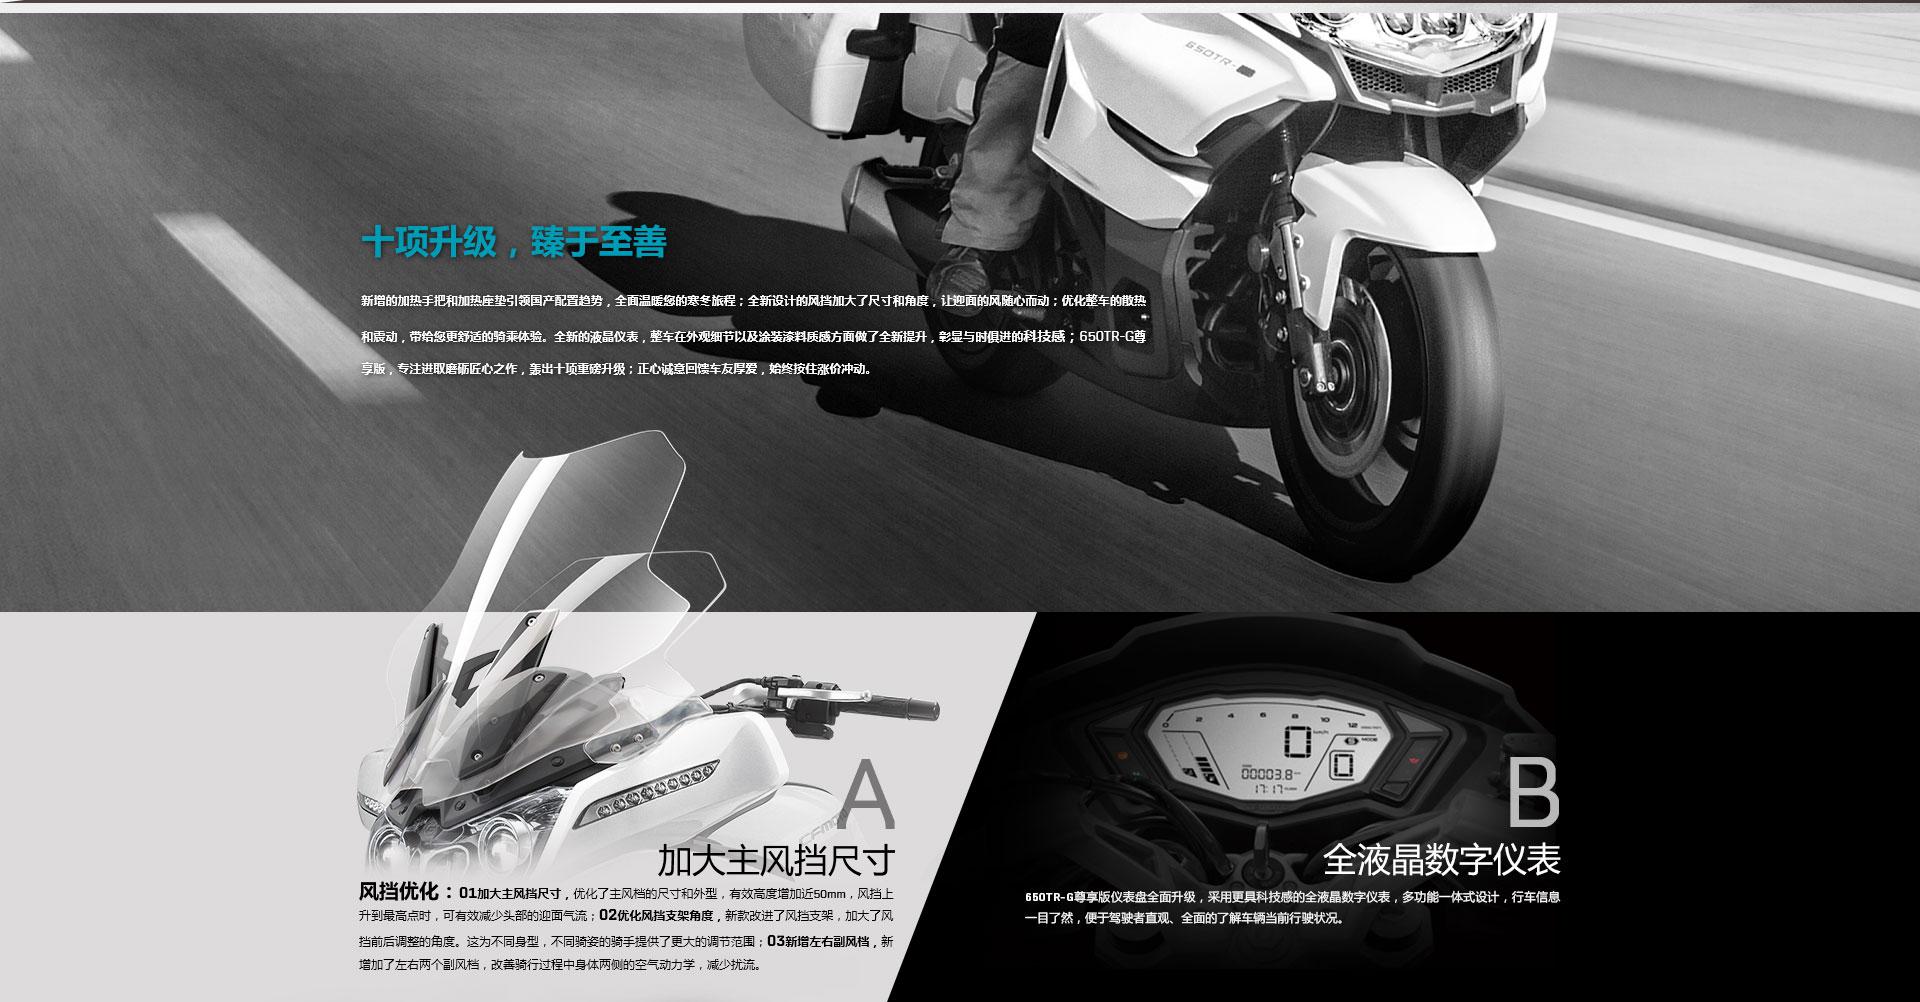 CFMOTO 春风 650TR-G 尊享版 摩托车